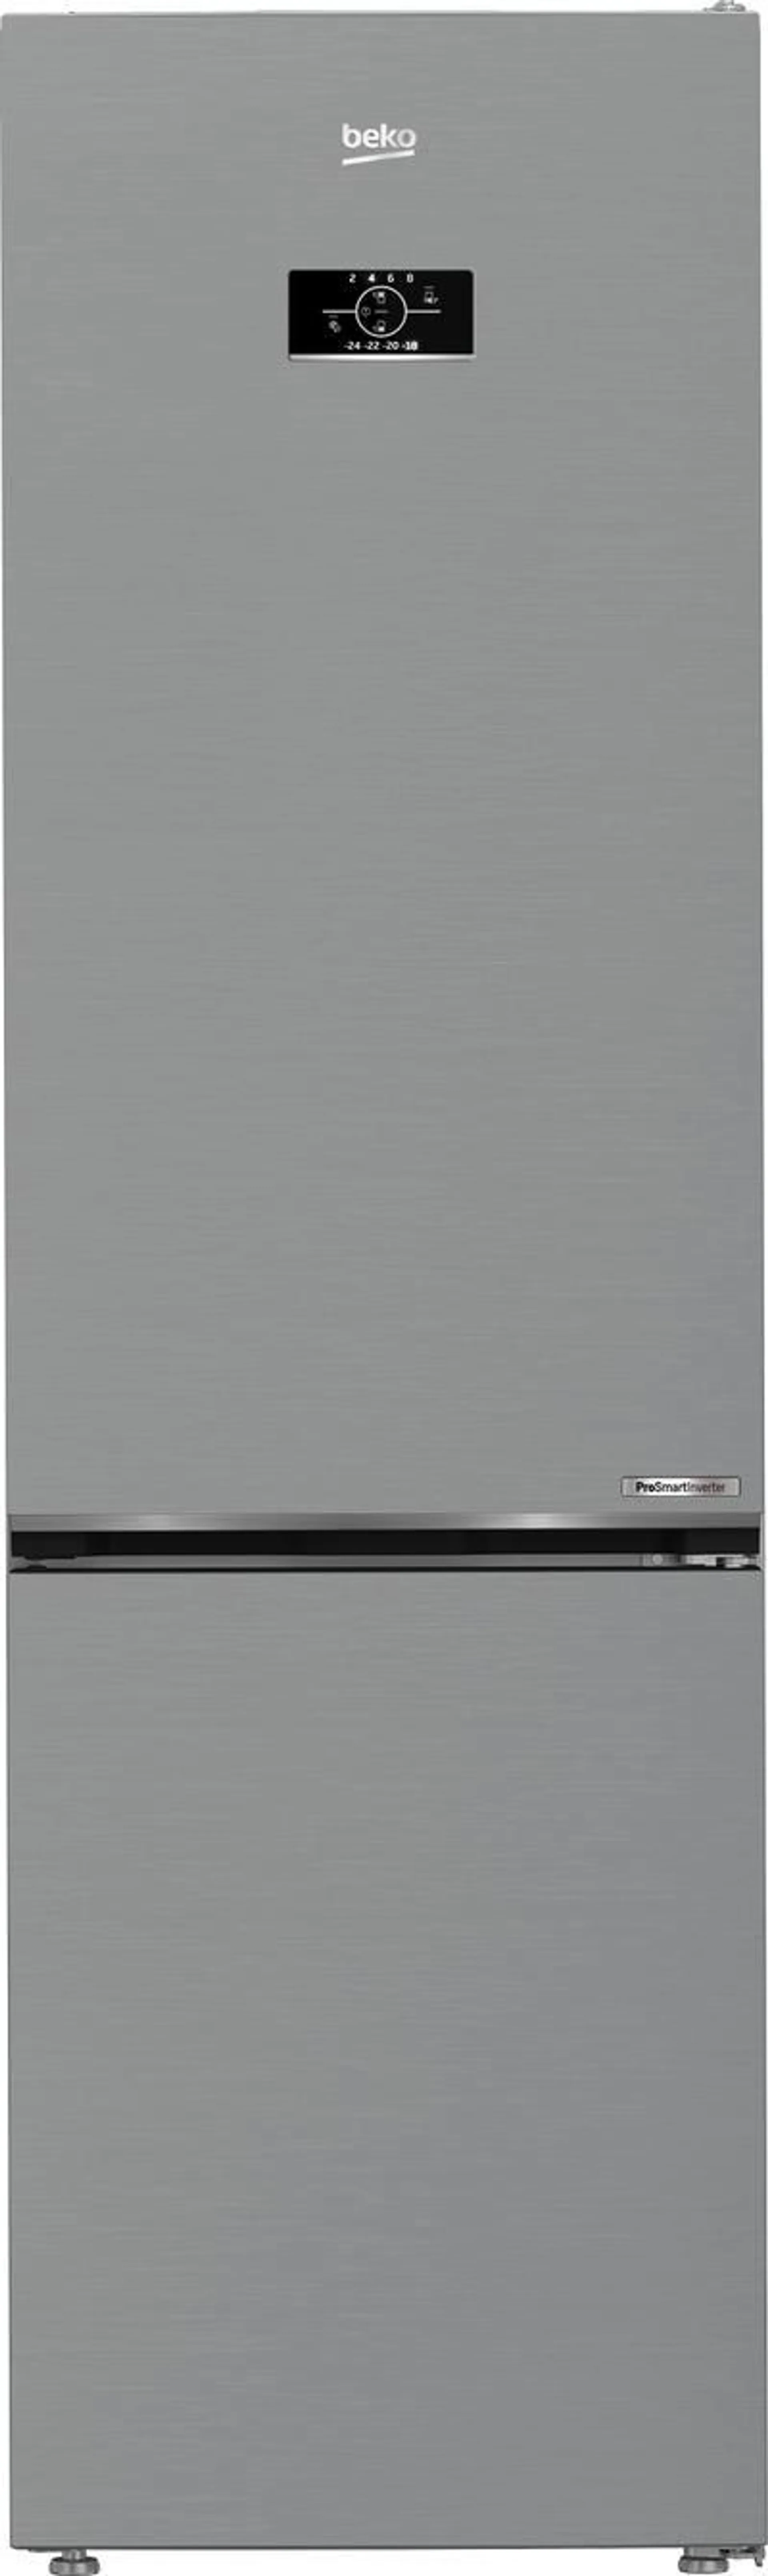 Tipologia di frigorifero Combinati - Nuova Classe efficienza energetica D - Sistema di raffreddamento No frost - Tipo di Ripiani Cristallo/Vetro